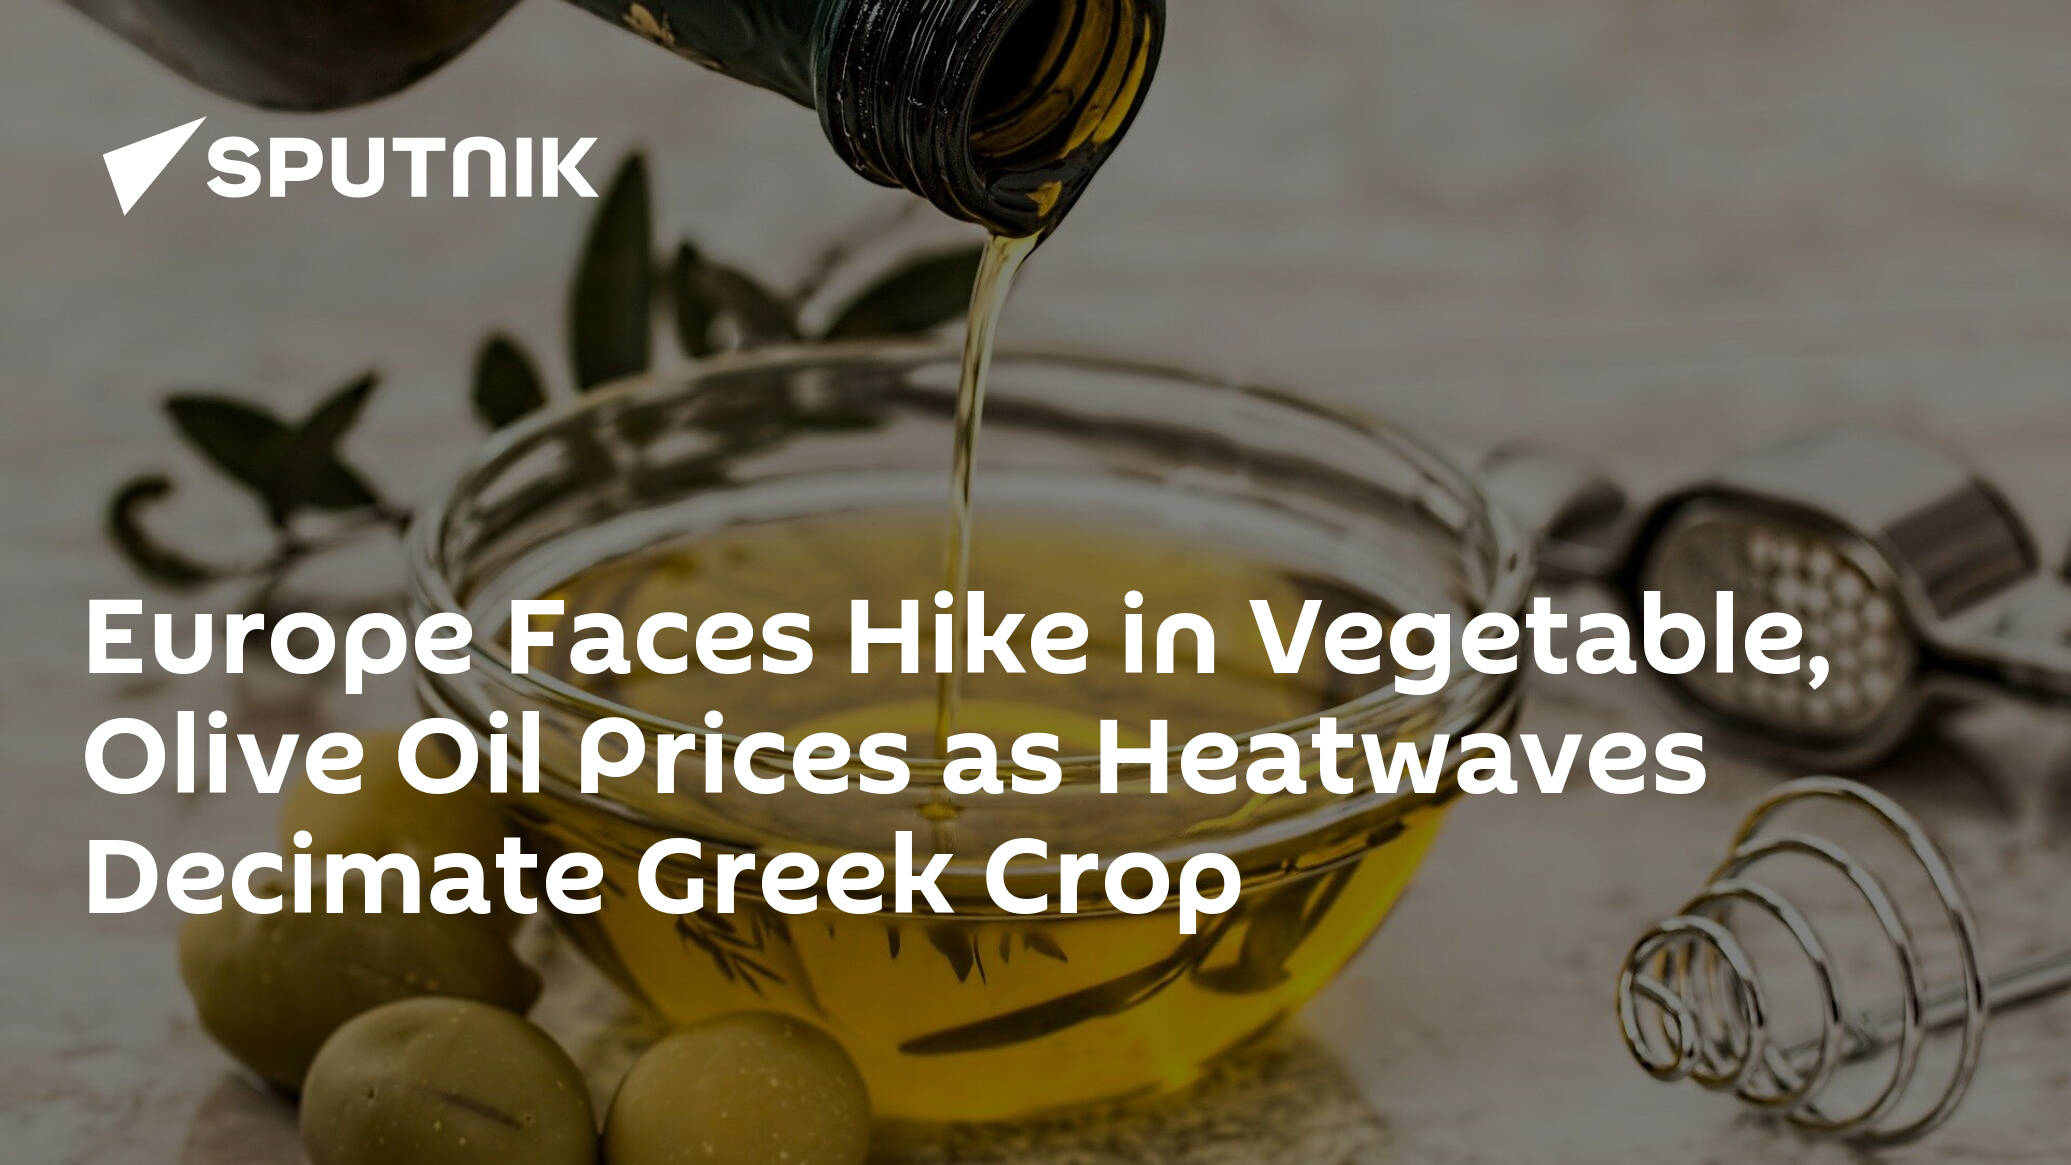 Europe Faces Hike in Vegetable, Olive Oil Prices as Heatwaves Decimate Greek Crop